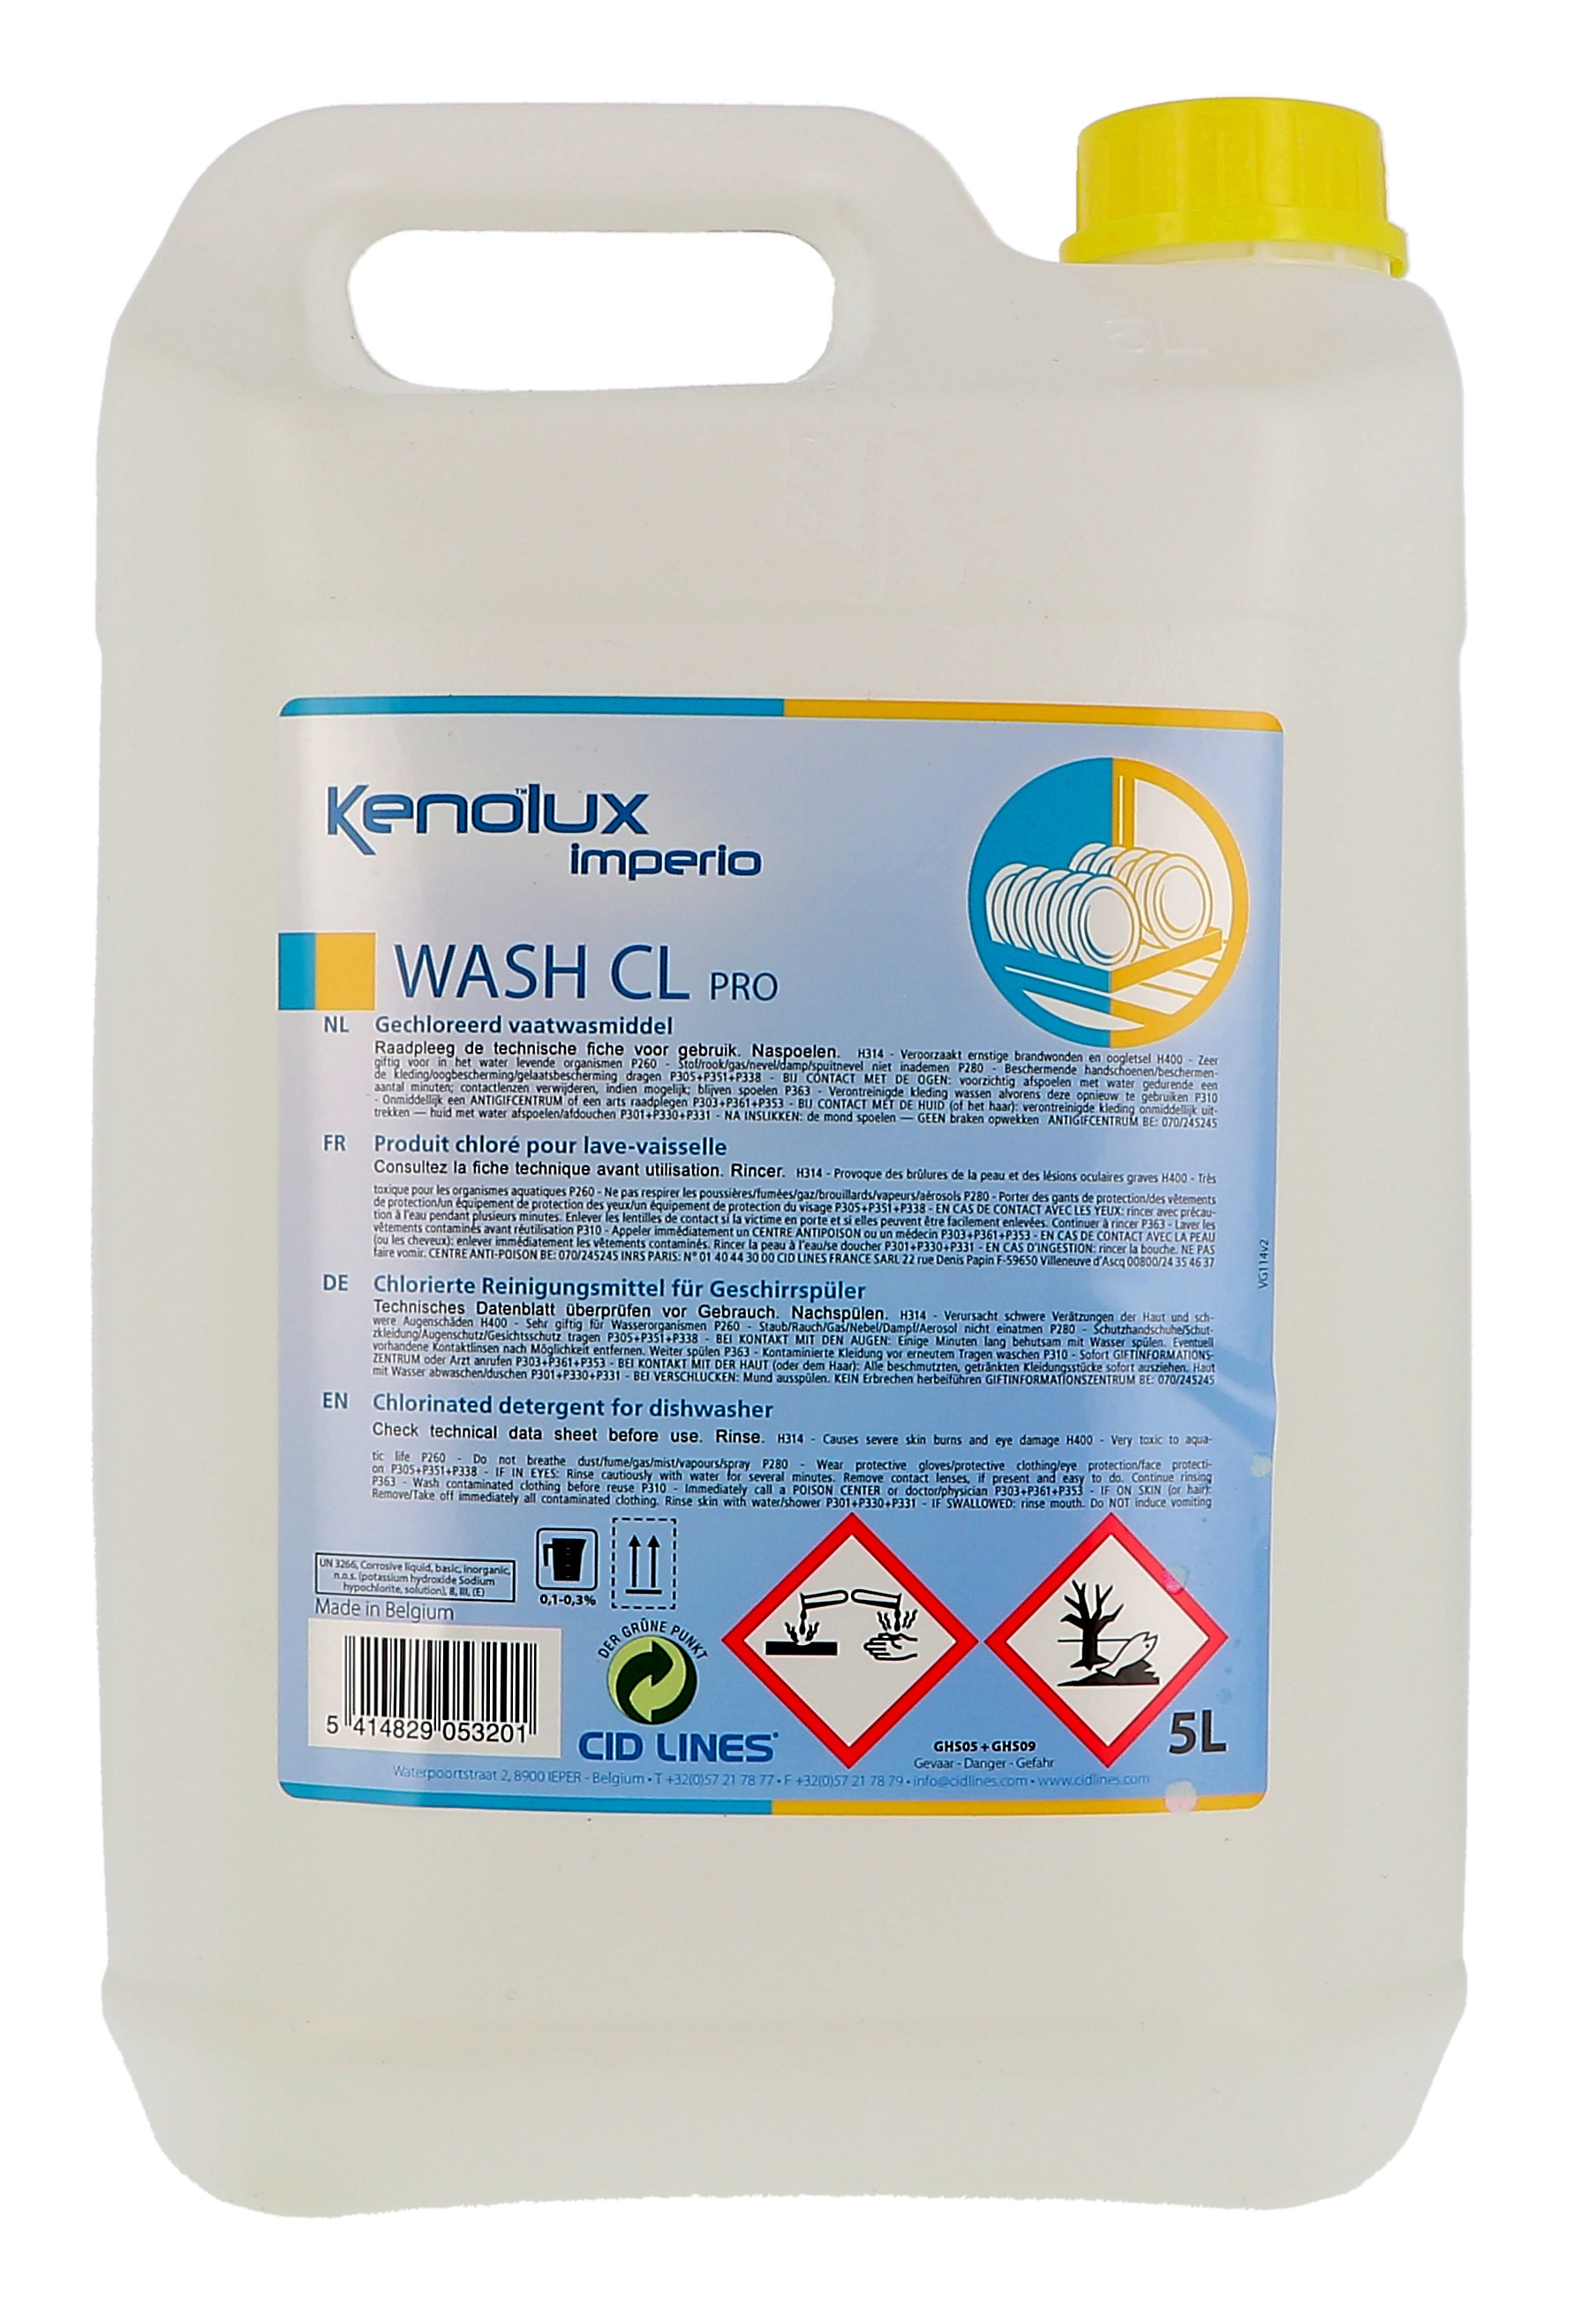 Kenolux Imperio Wash CL Pro 5L vloeibaar vaatwasmiddel met chloor Cid Lines (Vaatwasproducten)